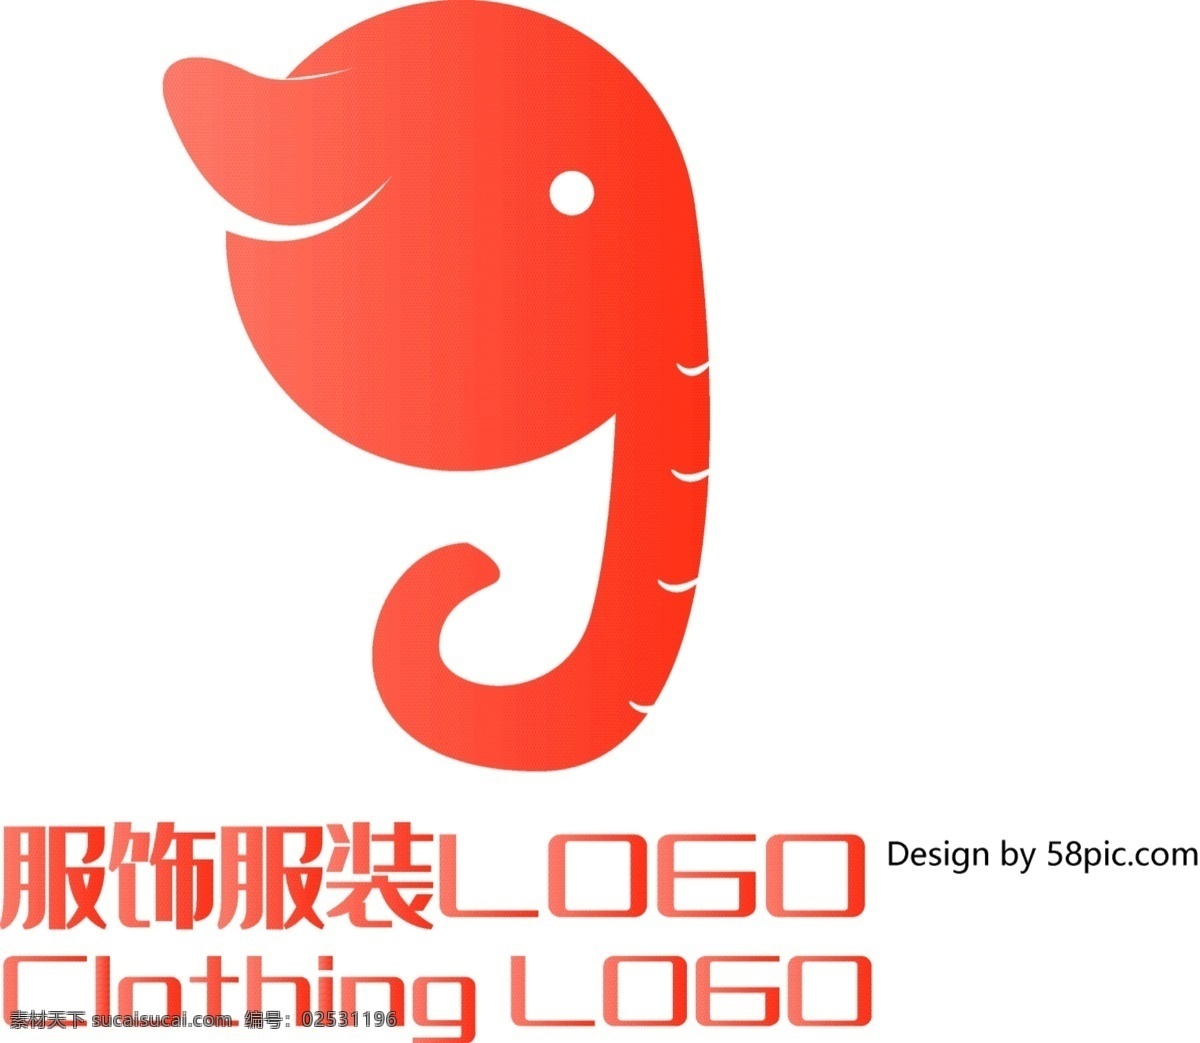 原创 创意 简约 g 字 大象 服饰 服装 logo 标志 可商用 字体设计